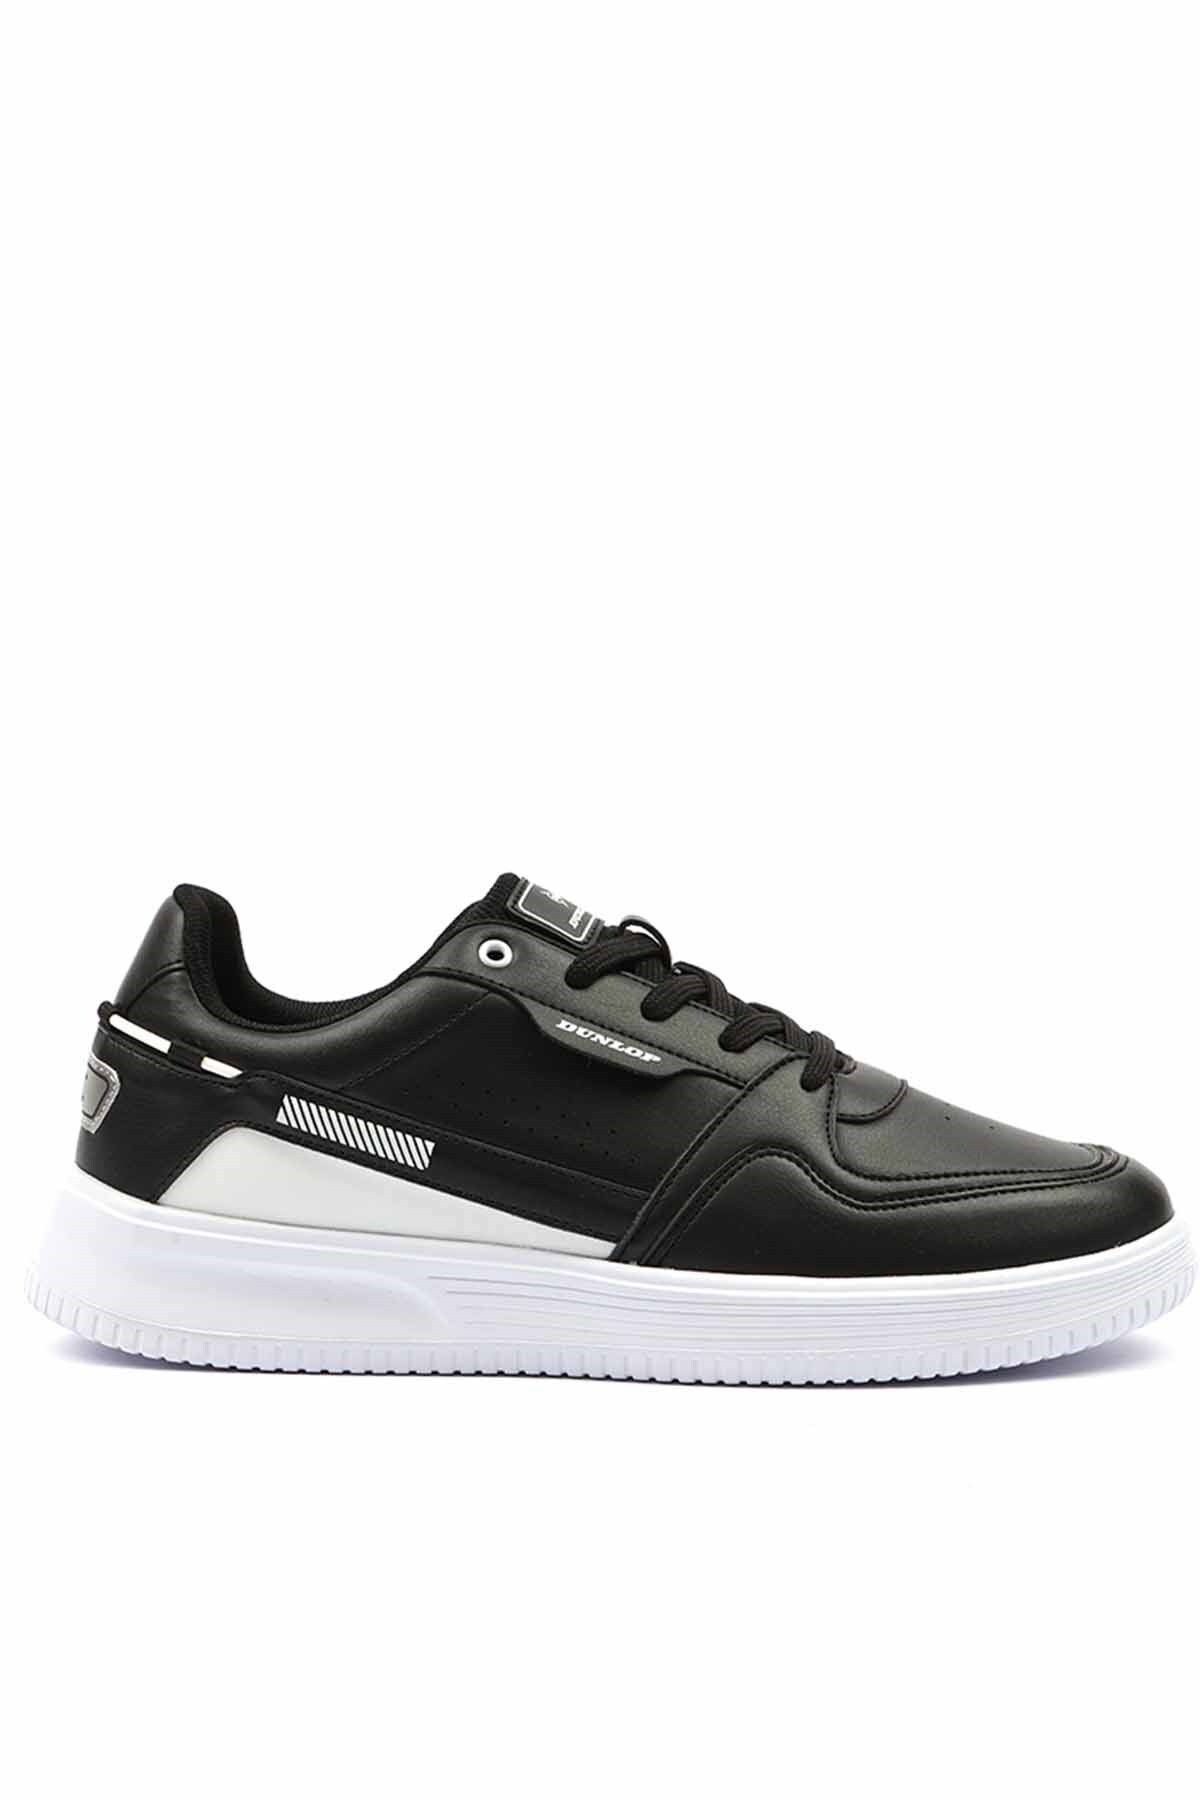 Dunlop Siyah Beyaz Sneakers Erkek Günlük Spor Ayakkabı Dnp-1769s-bsiyah-byz